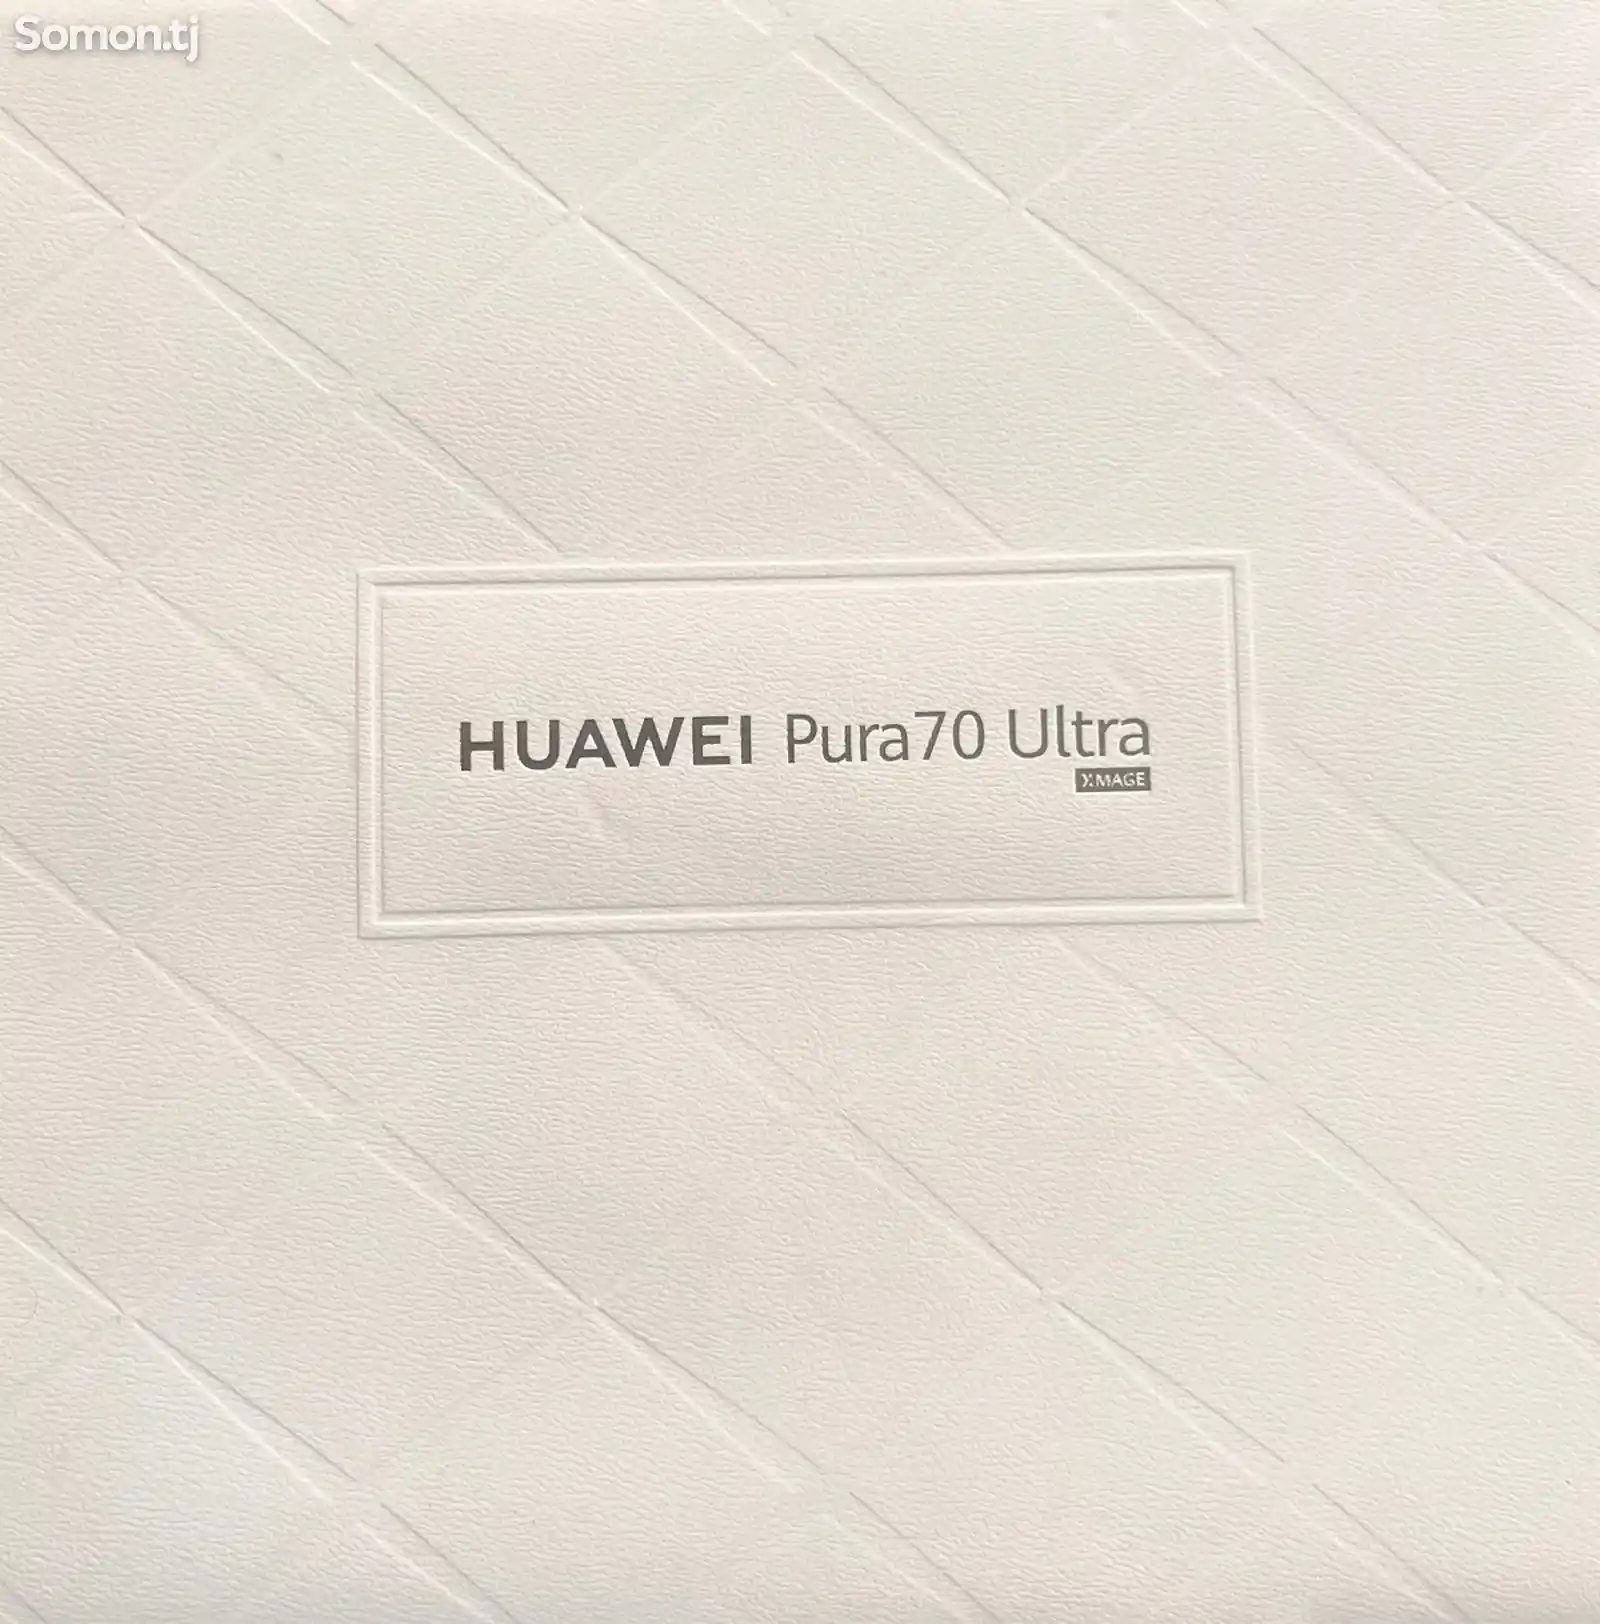 Huawei Pura 70 Ultra-1